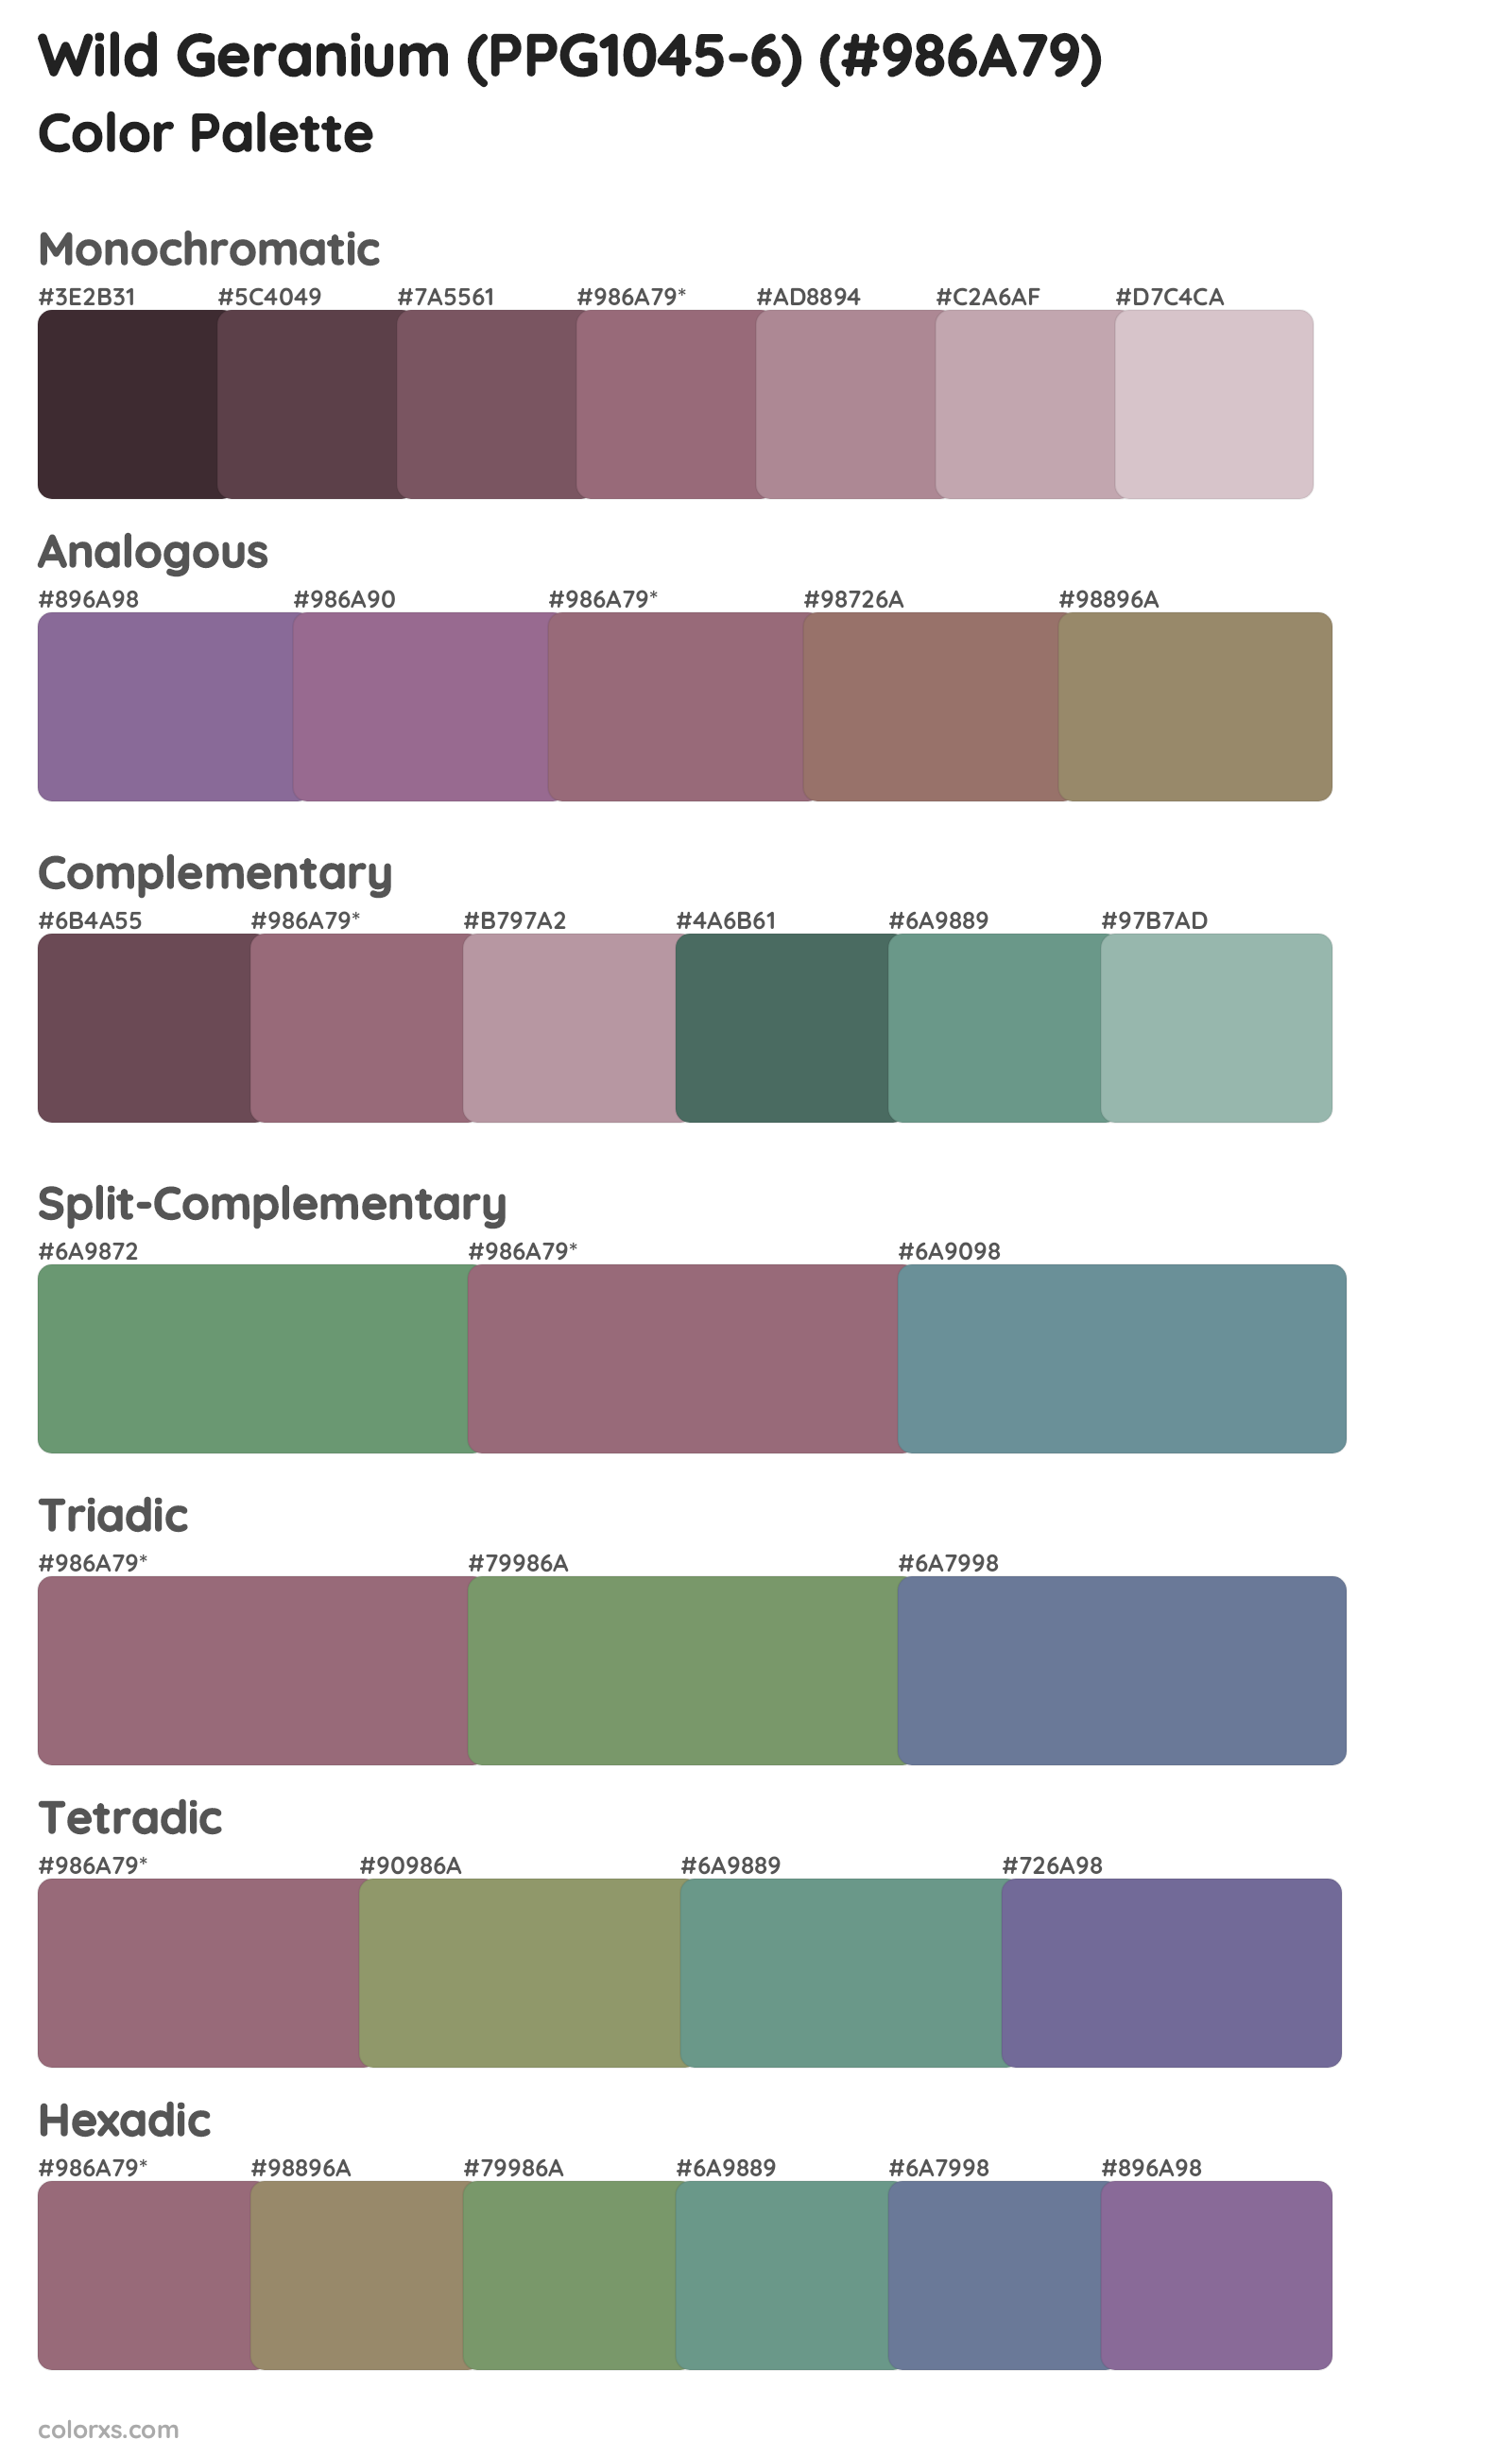 Wild Geranium (PPG1045-6) Color Scheme Palettes